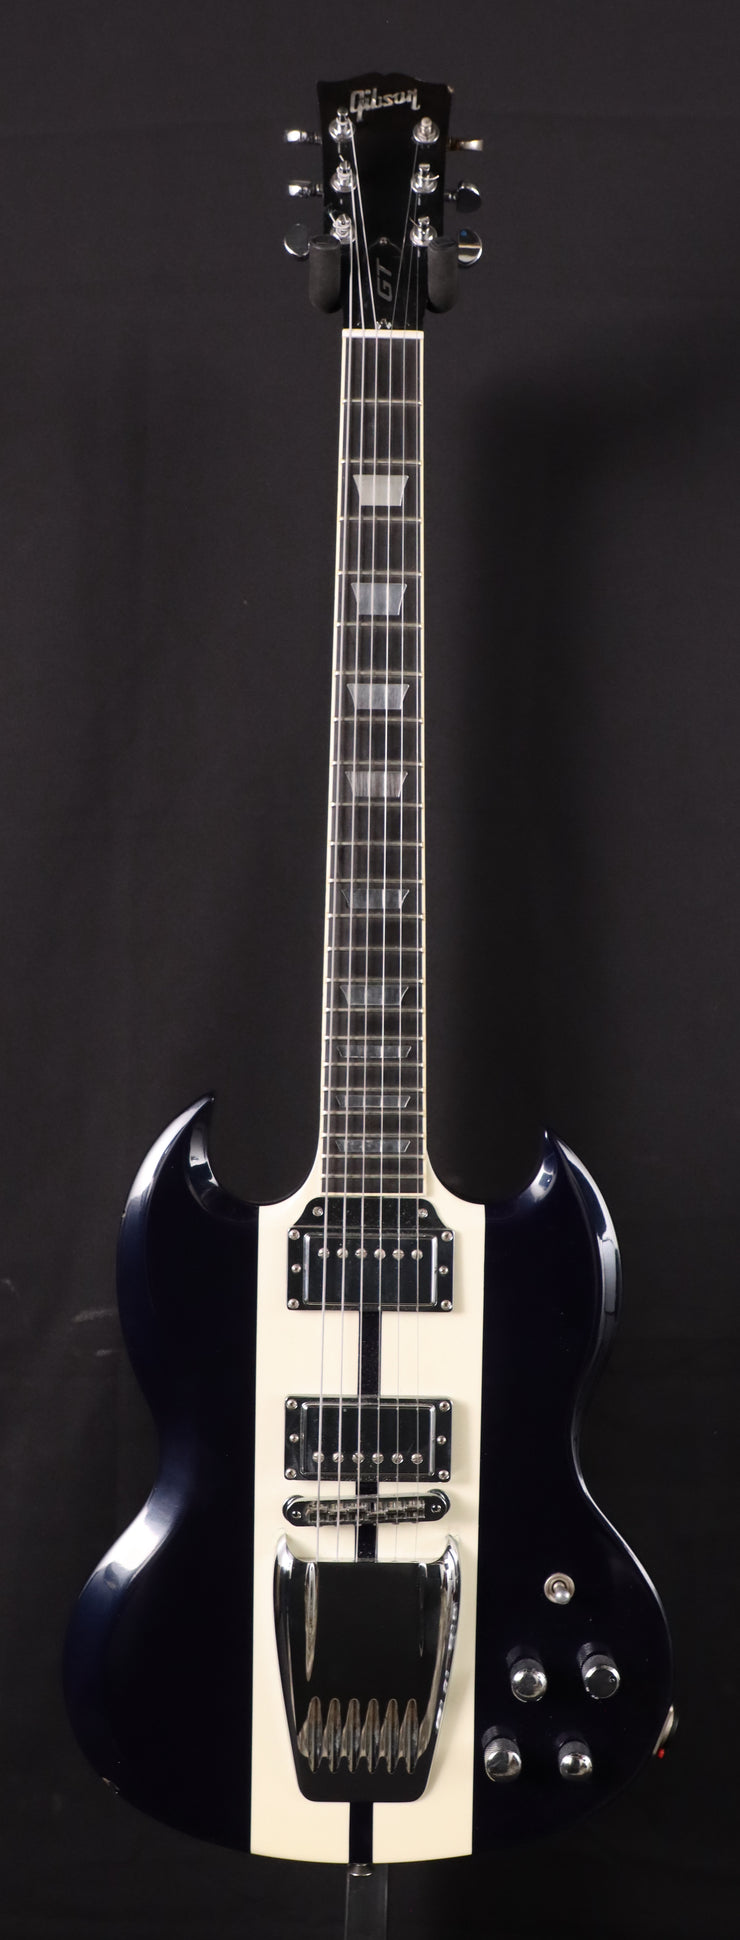 2007 Gibson SG-GT